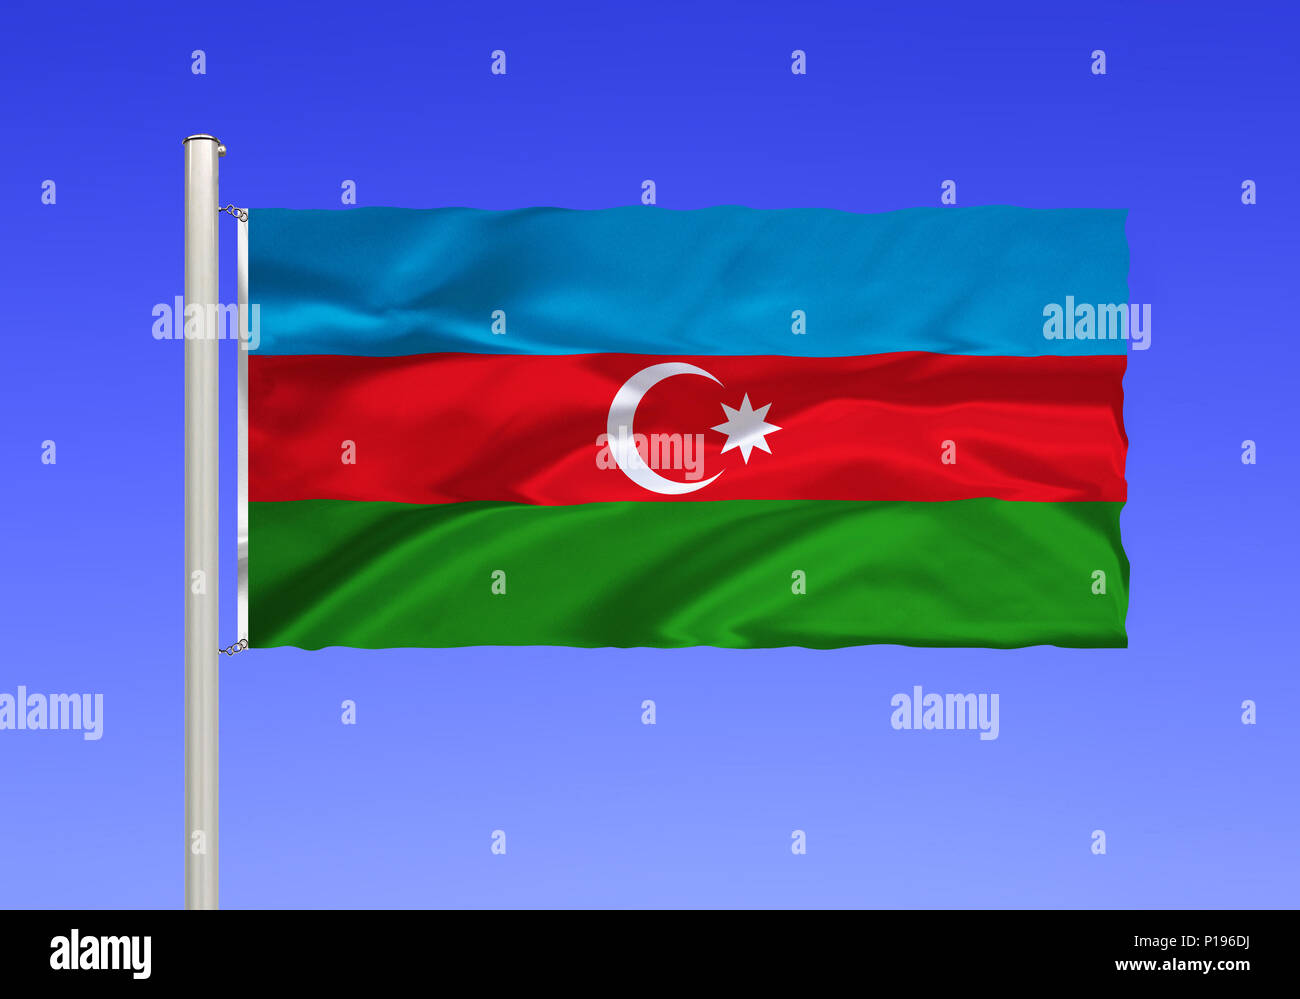 Pavillon d'Aser Bais Chan, pays enclavé d'Asie du Sud-Ouest, le capital est la ville de Bakou sur la mer Caspienne., Aserbaischan Binnenstaat Flagge von, dans Banque D'Images